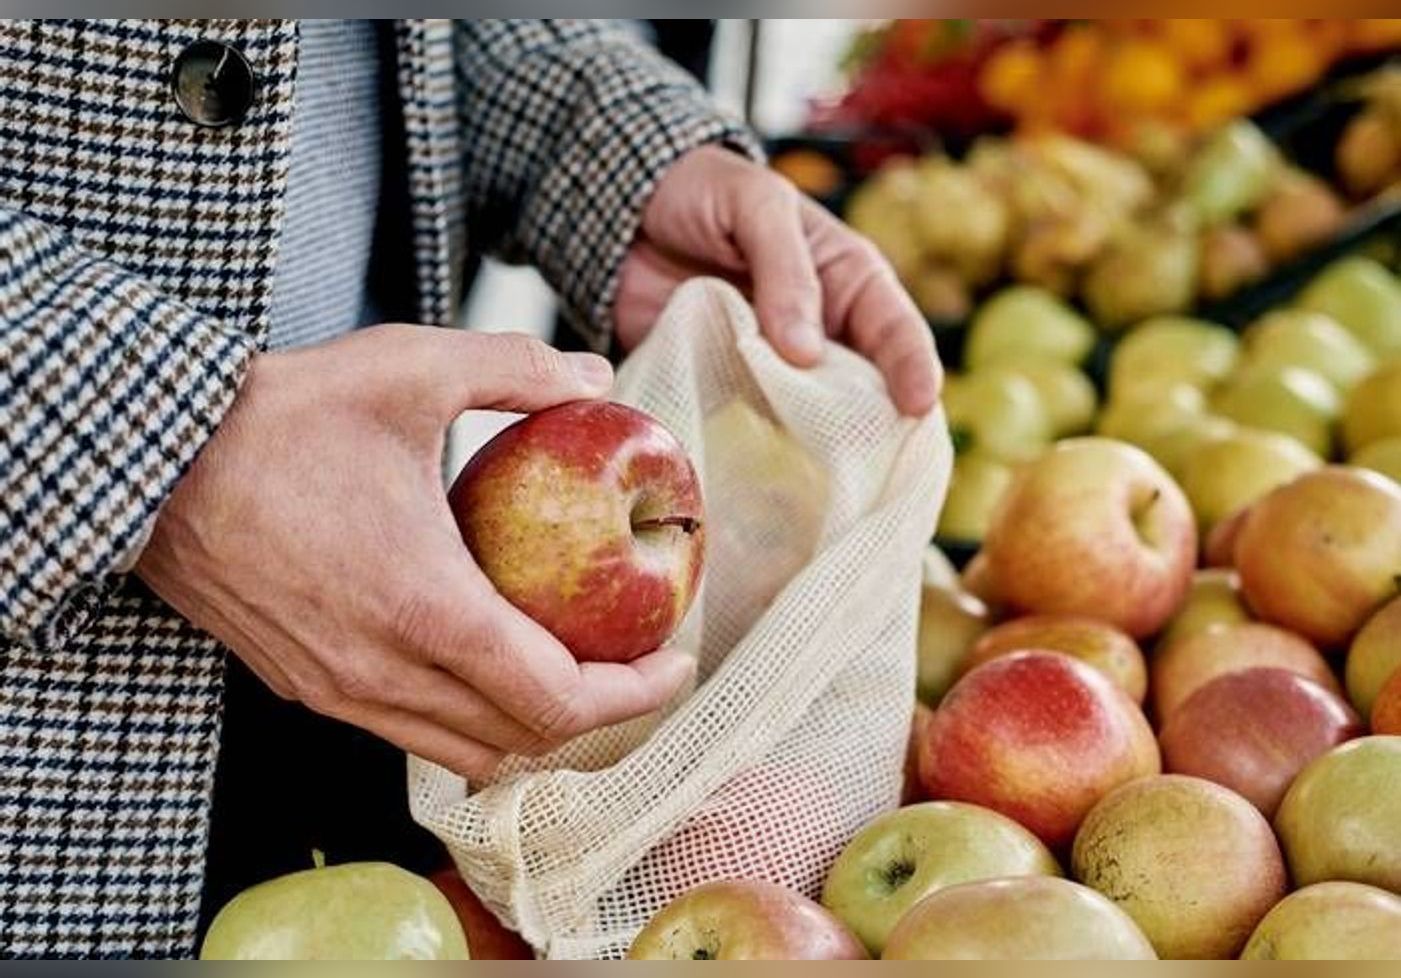 Des traces de pesticides parmi les plus dangereux de plus en plus nombreuses dans les fruits, alerte une ONG